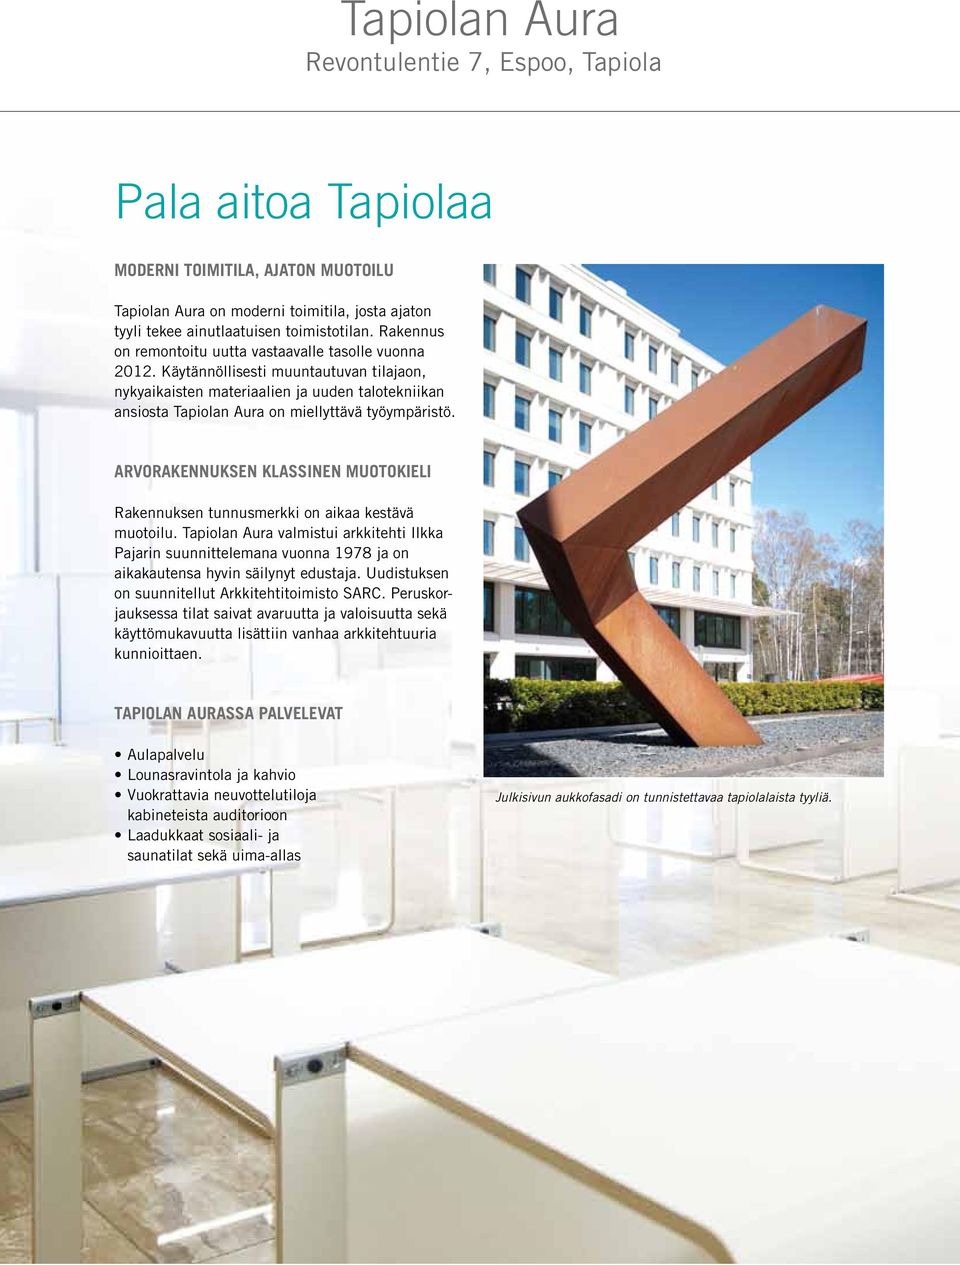 Käytännöllisesti muuntautuvan tilajaon, nykyaikaisten materiaalien ja uuden talotekniikan ansiosta Tapiolan Aura on miellyttävä työympäristö.